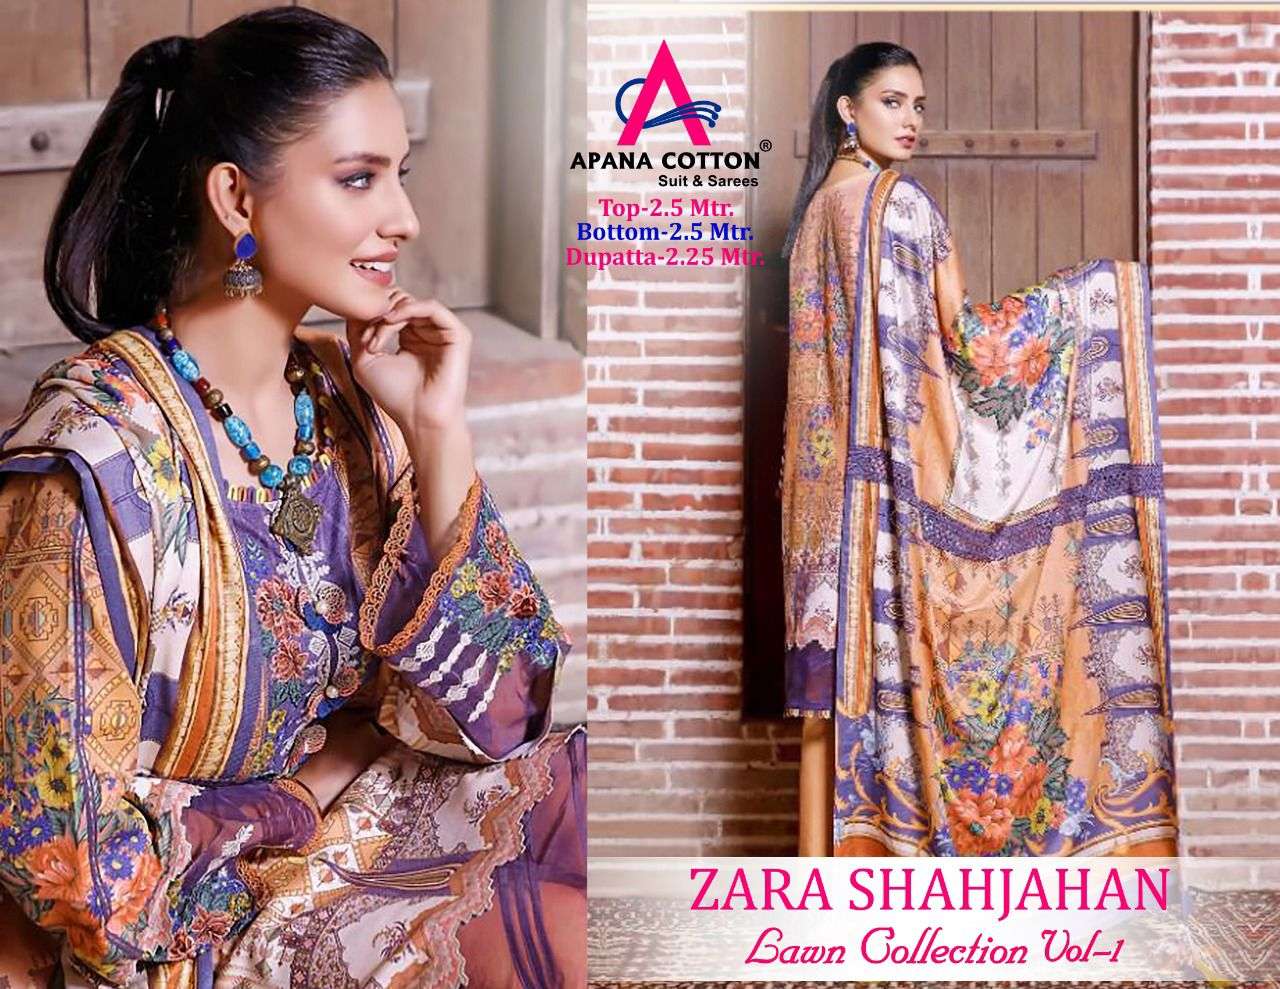 apana cotton zara shahjahan lawn cotton suits manufacturer surat